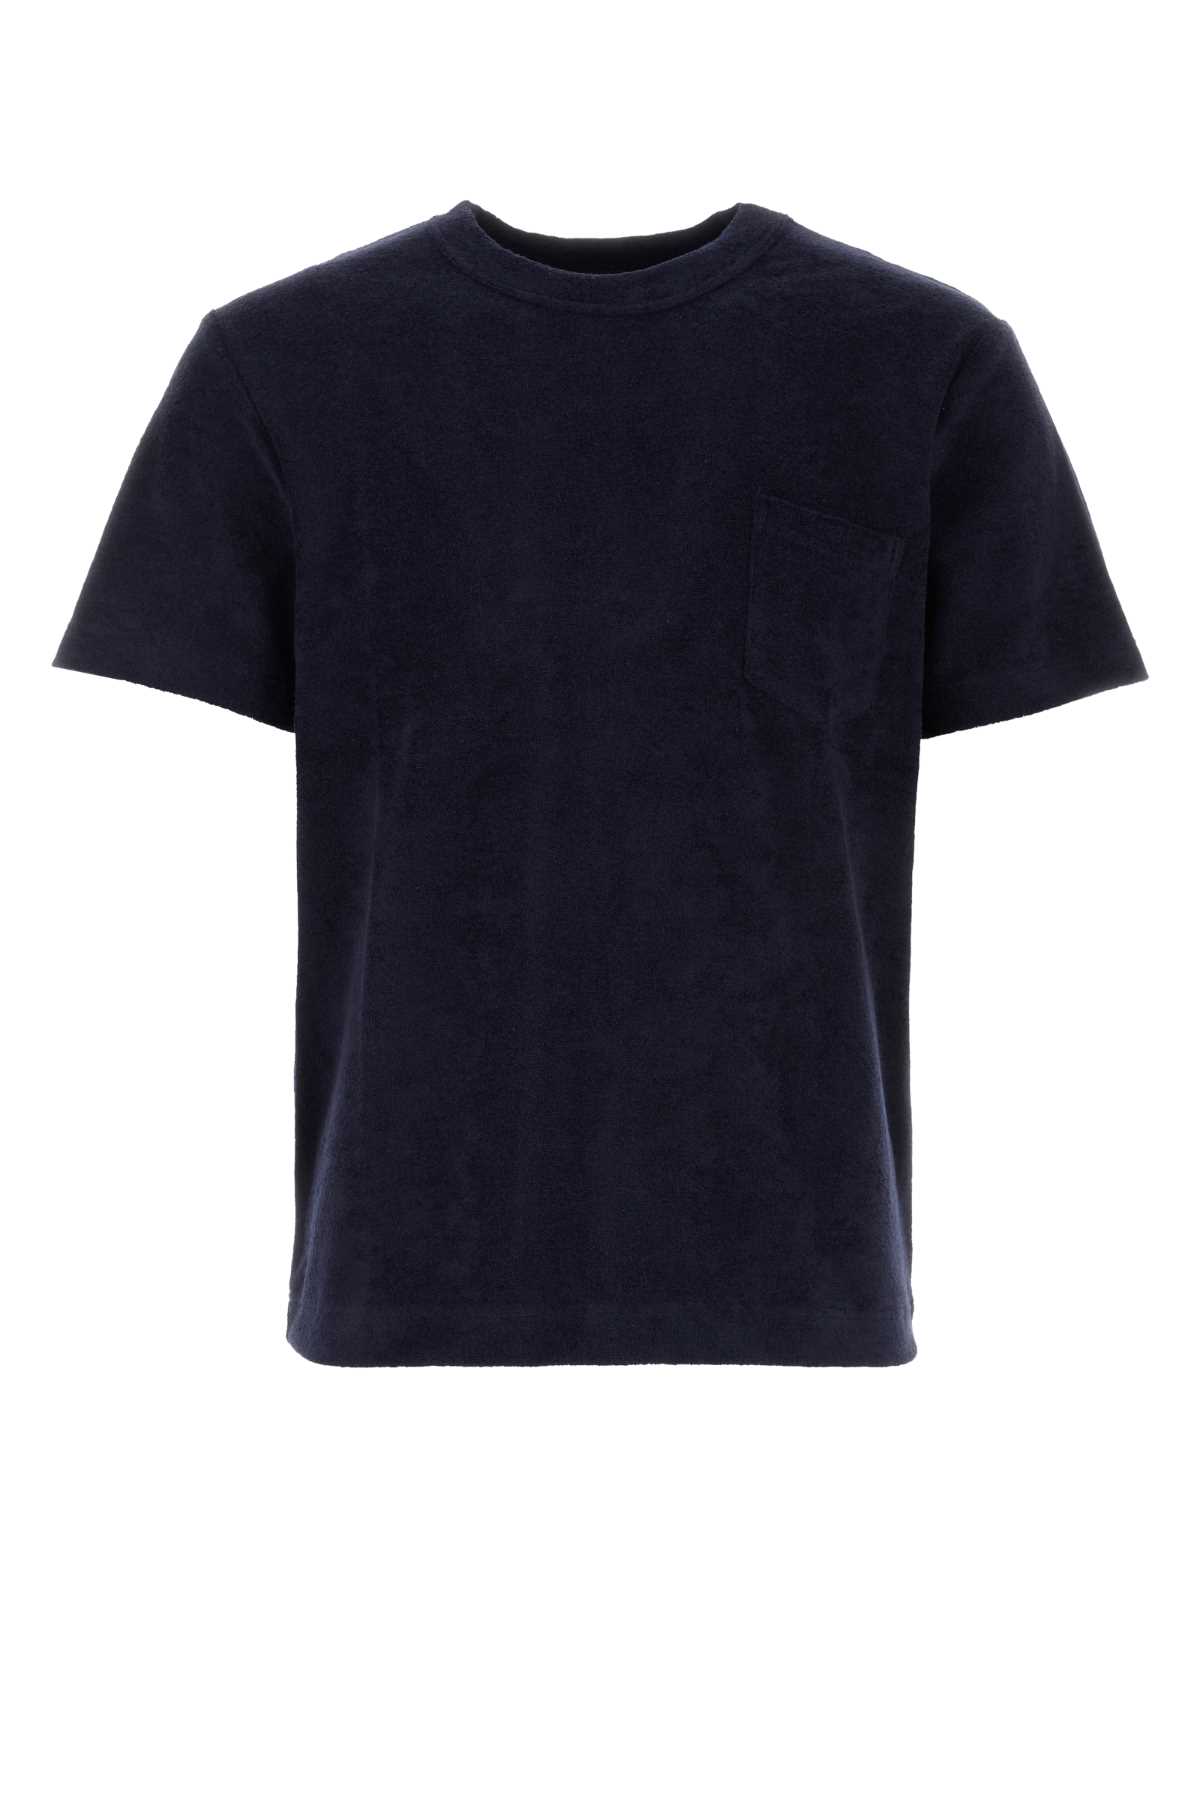 Howlin Navy Blue Terry Fons T-shirt